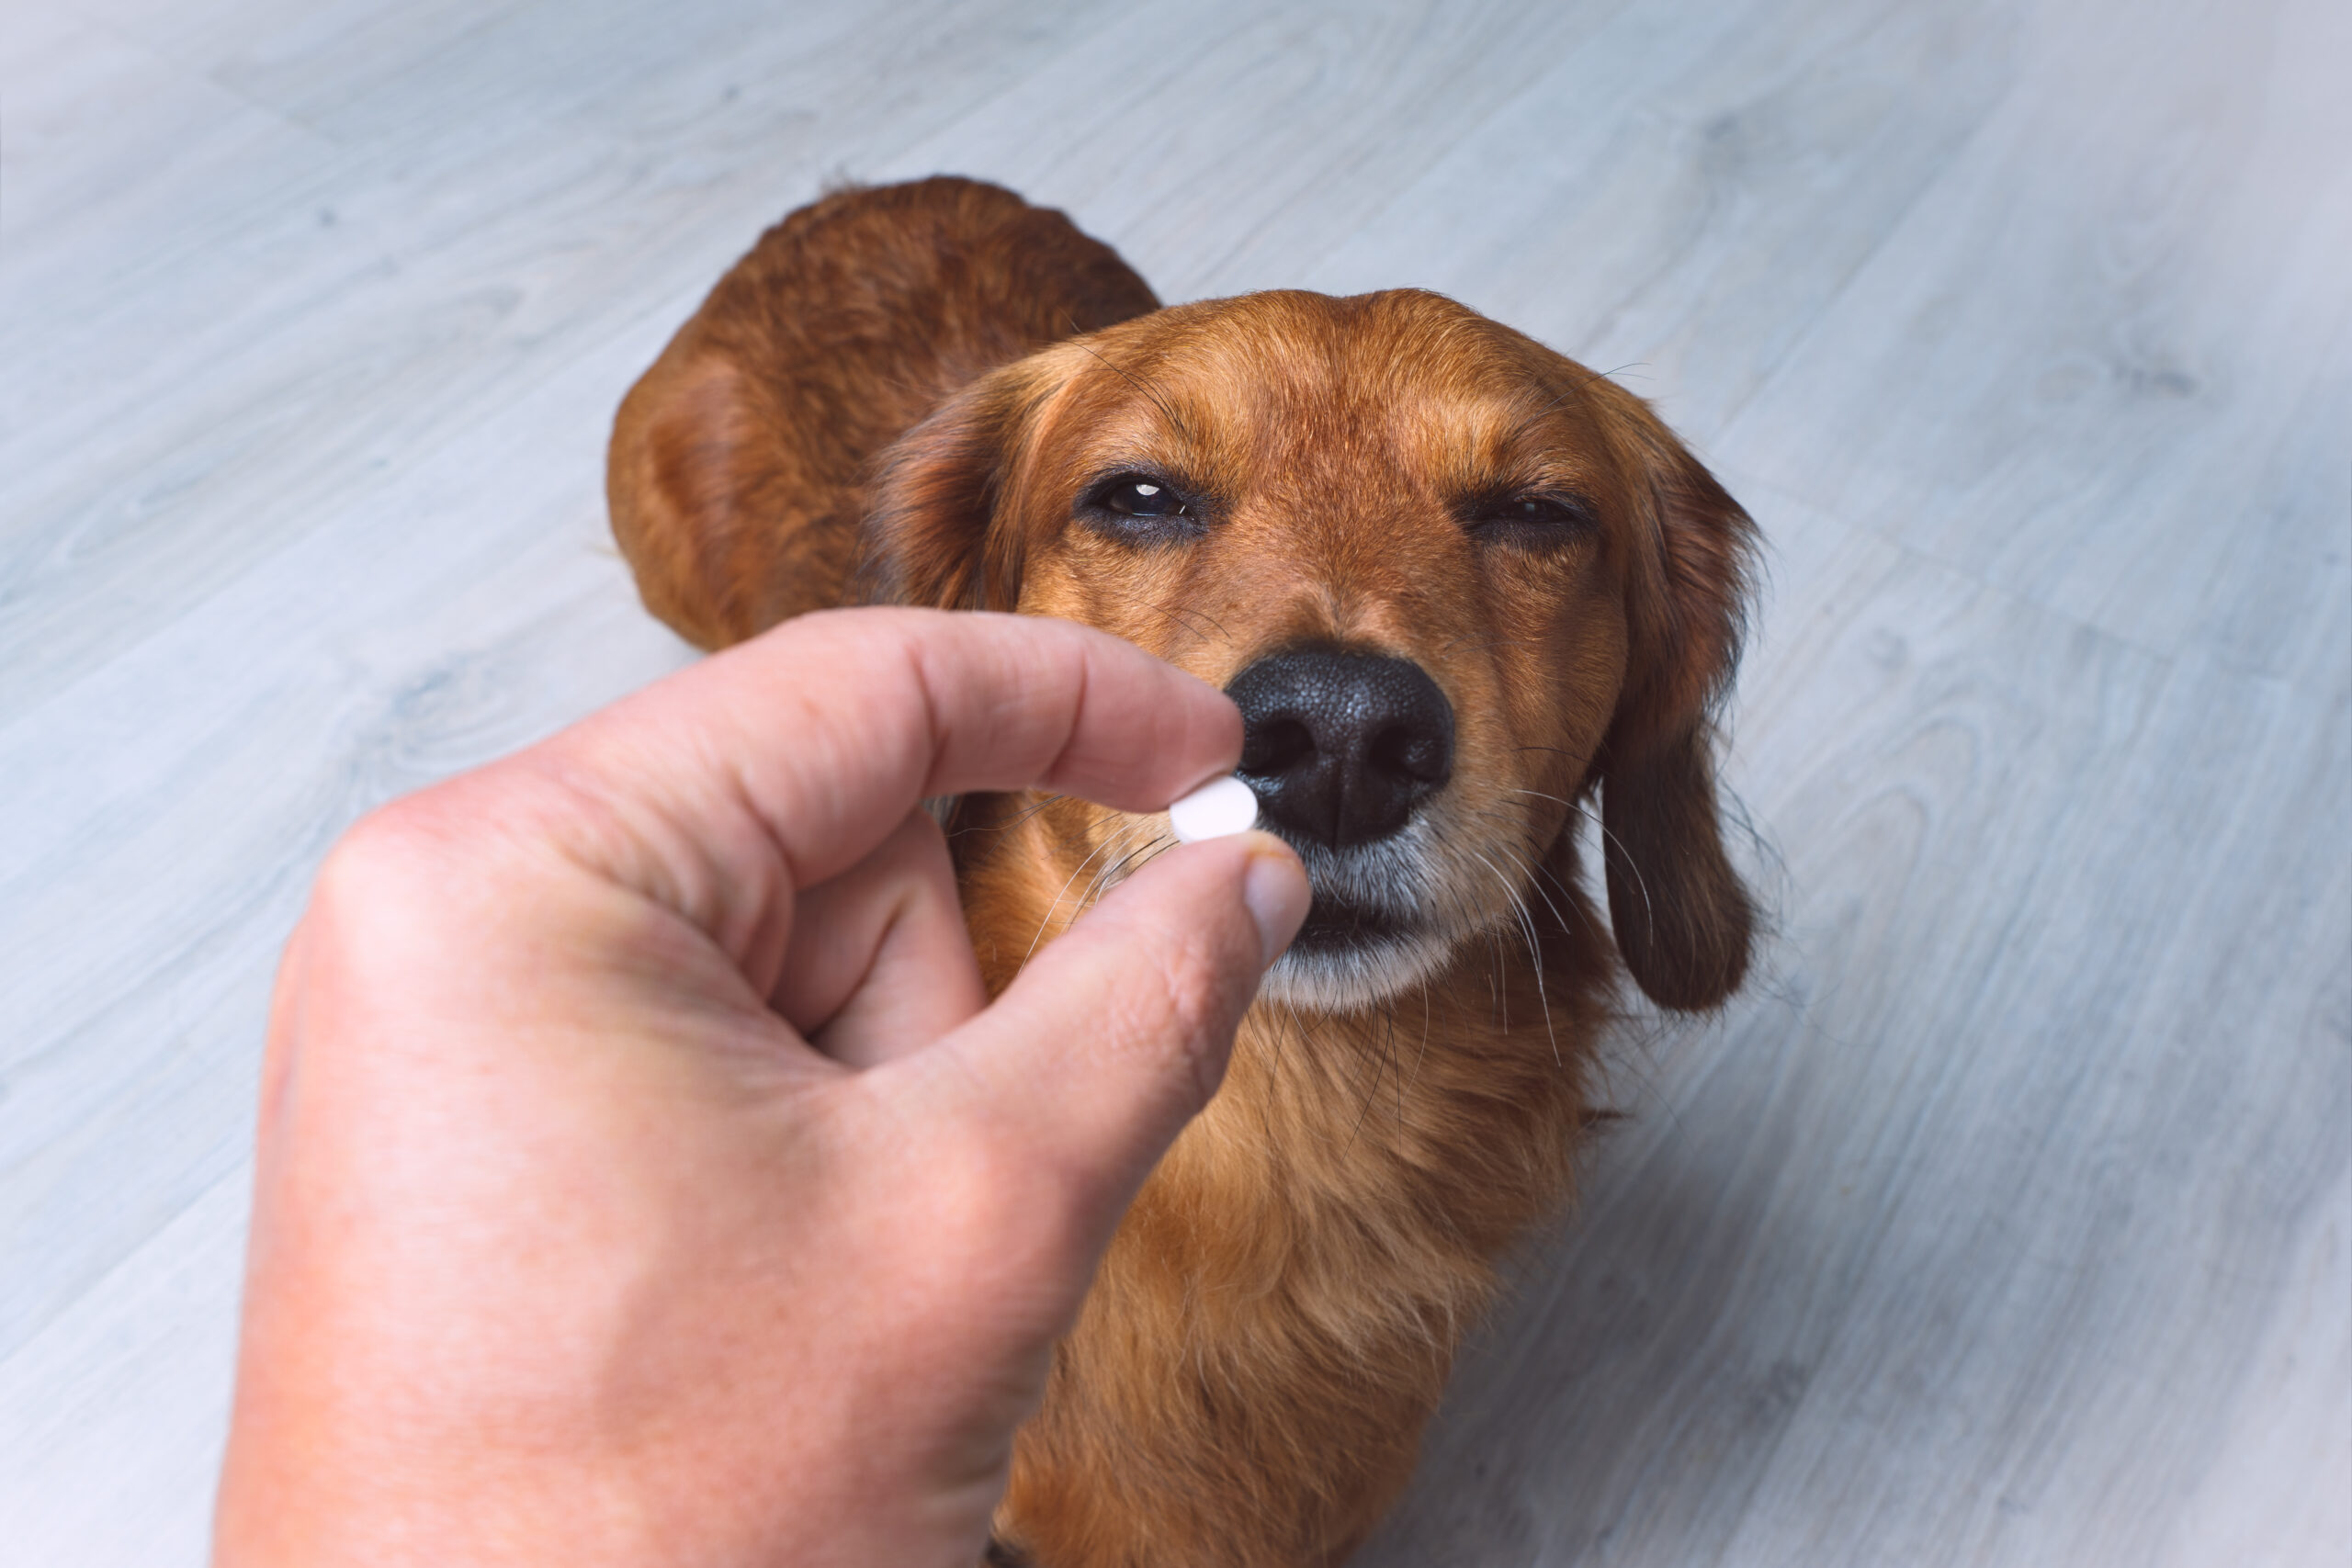 Hund kriegt Tablette oder Medizin vom Besitzer